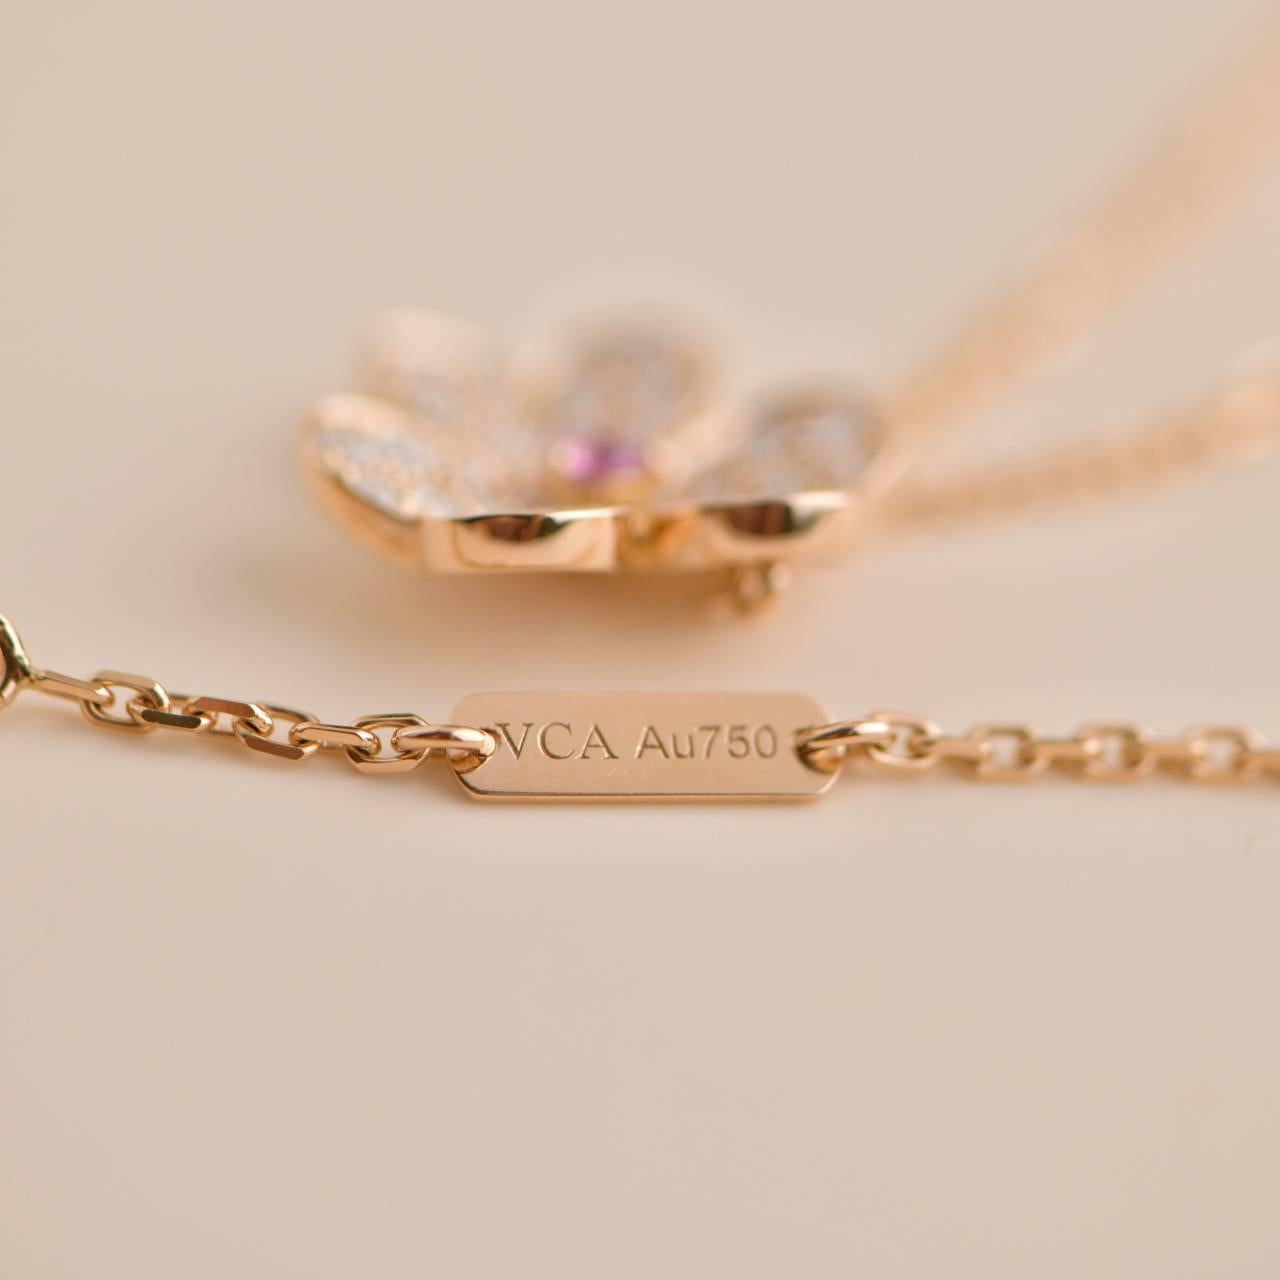 Brilliant Cut Van Cleef & Arpels Frivole Flower Diamond Pink Sapphire Pendant Necklace For Sale